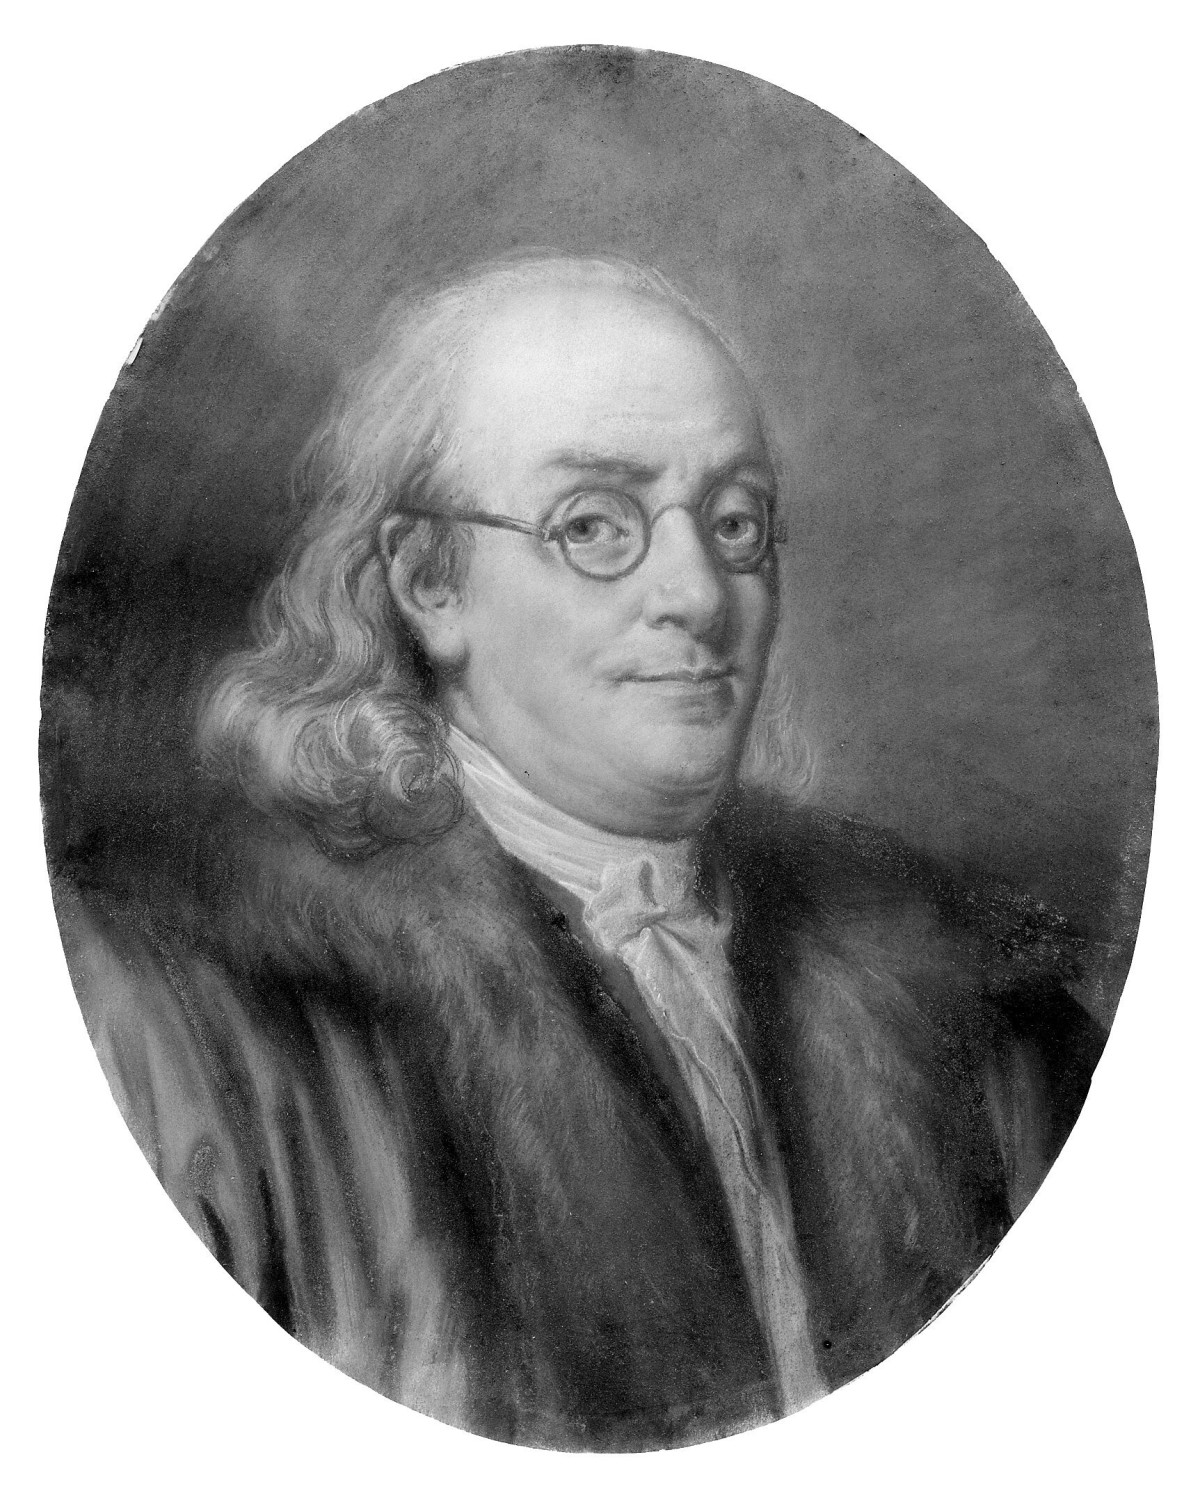 20211207-mb-imago-Benjamin Franklin 